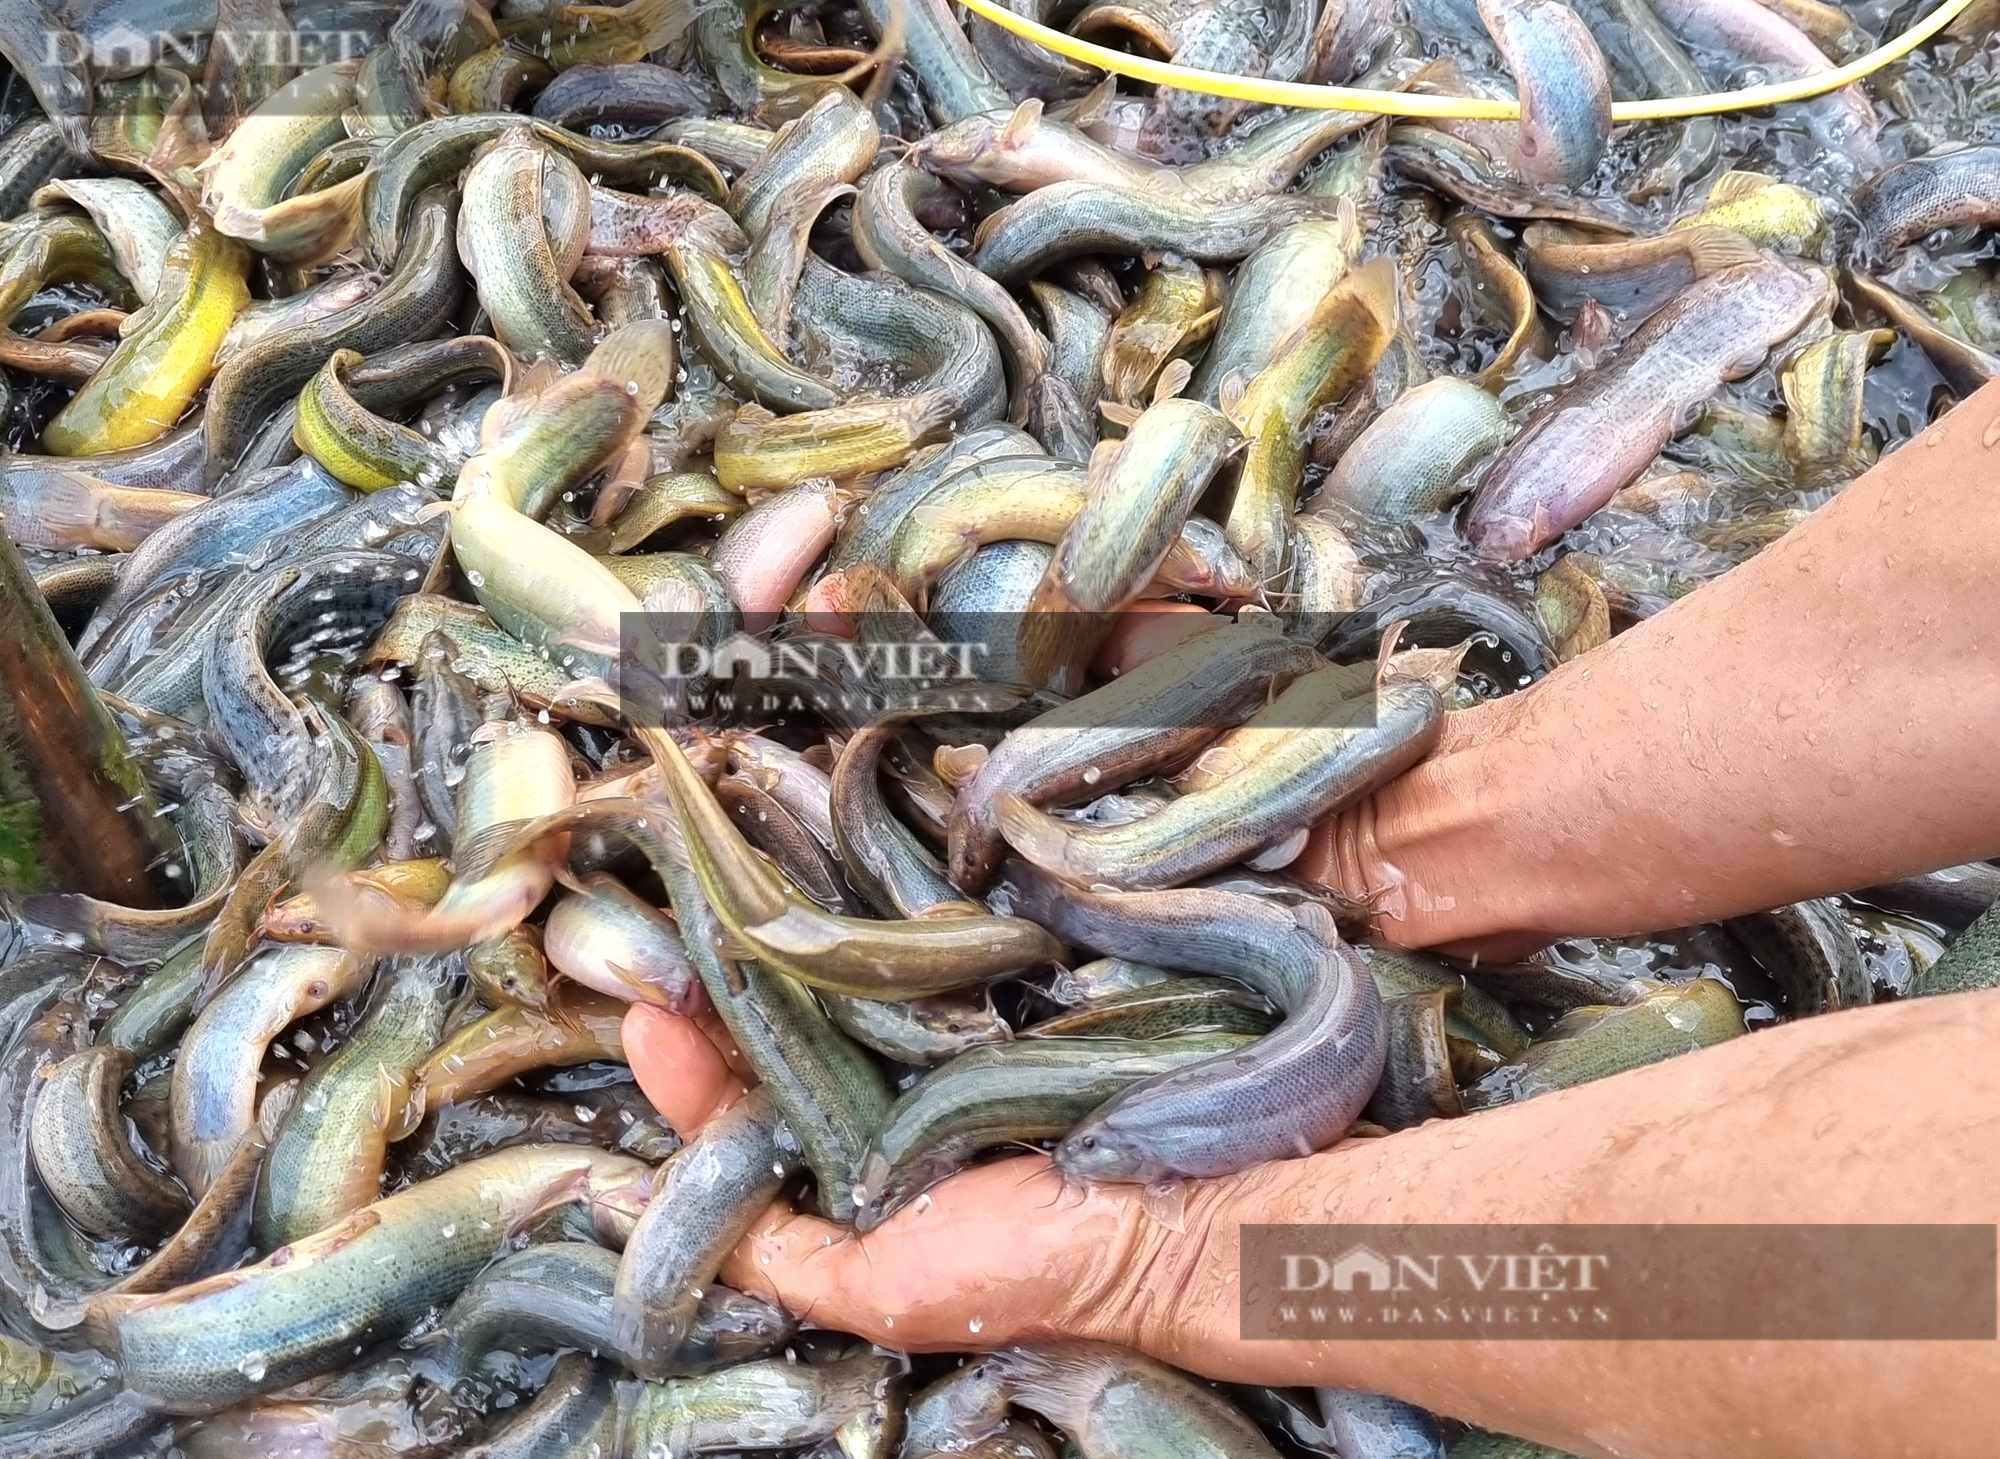 Nuôi cá chạch sụn, một nông dân ở Ninh Bình lãi 2 tỉ đồng - Ảnh 6.